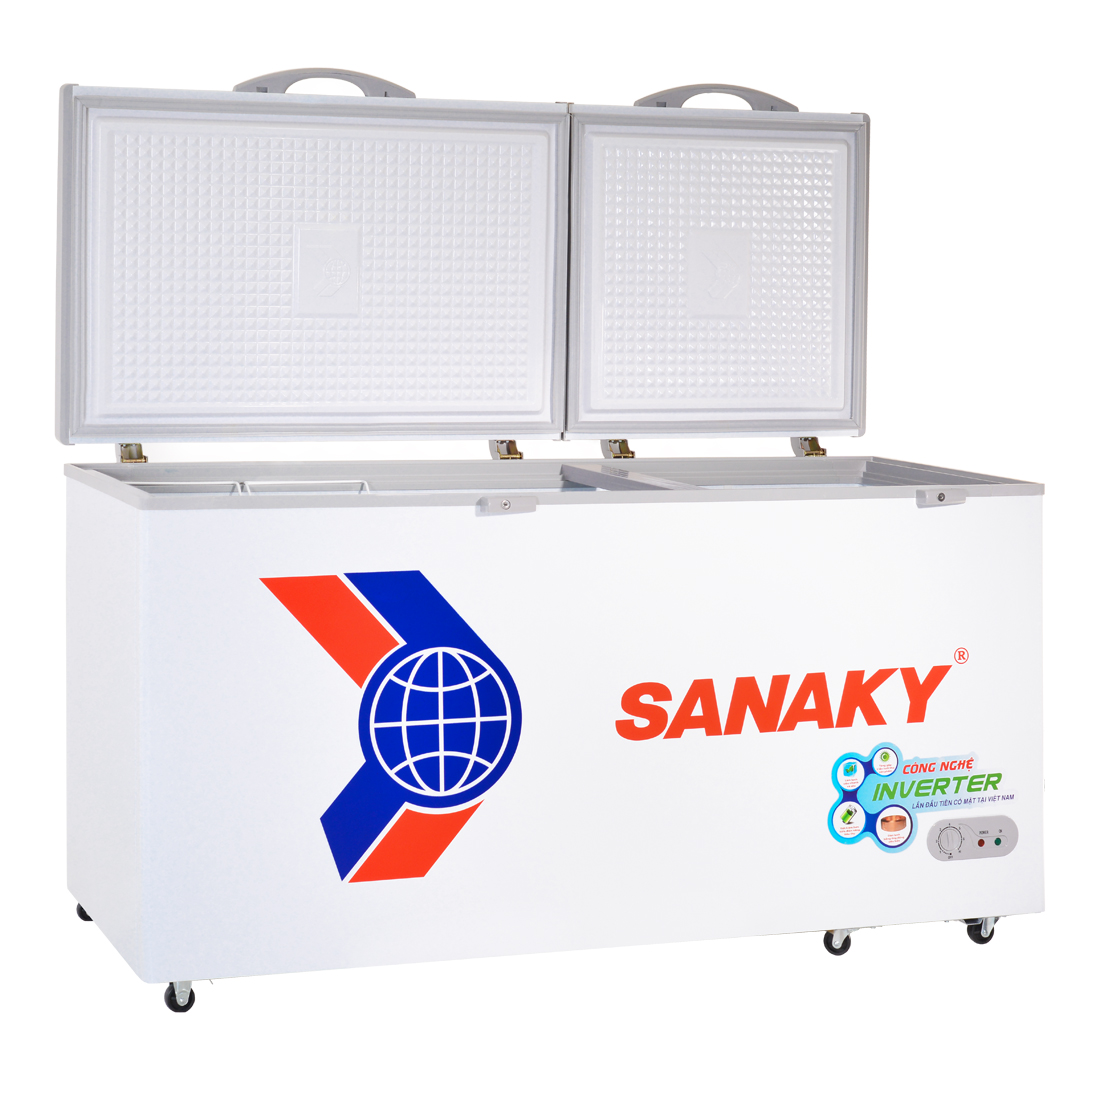 Hình ảnh Tủ Đông Sanaky VH-6699HY3 (530L) - Hàng Chính Hãng